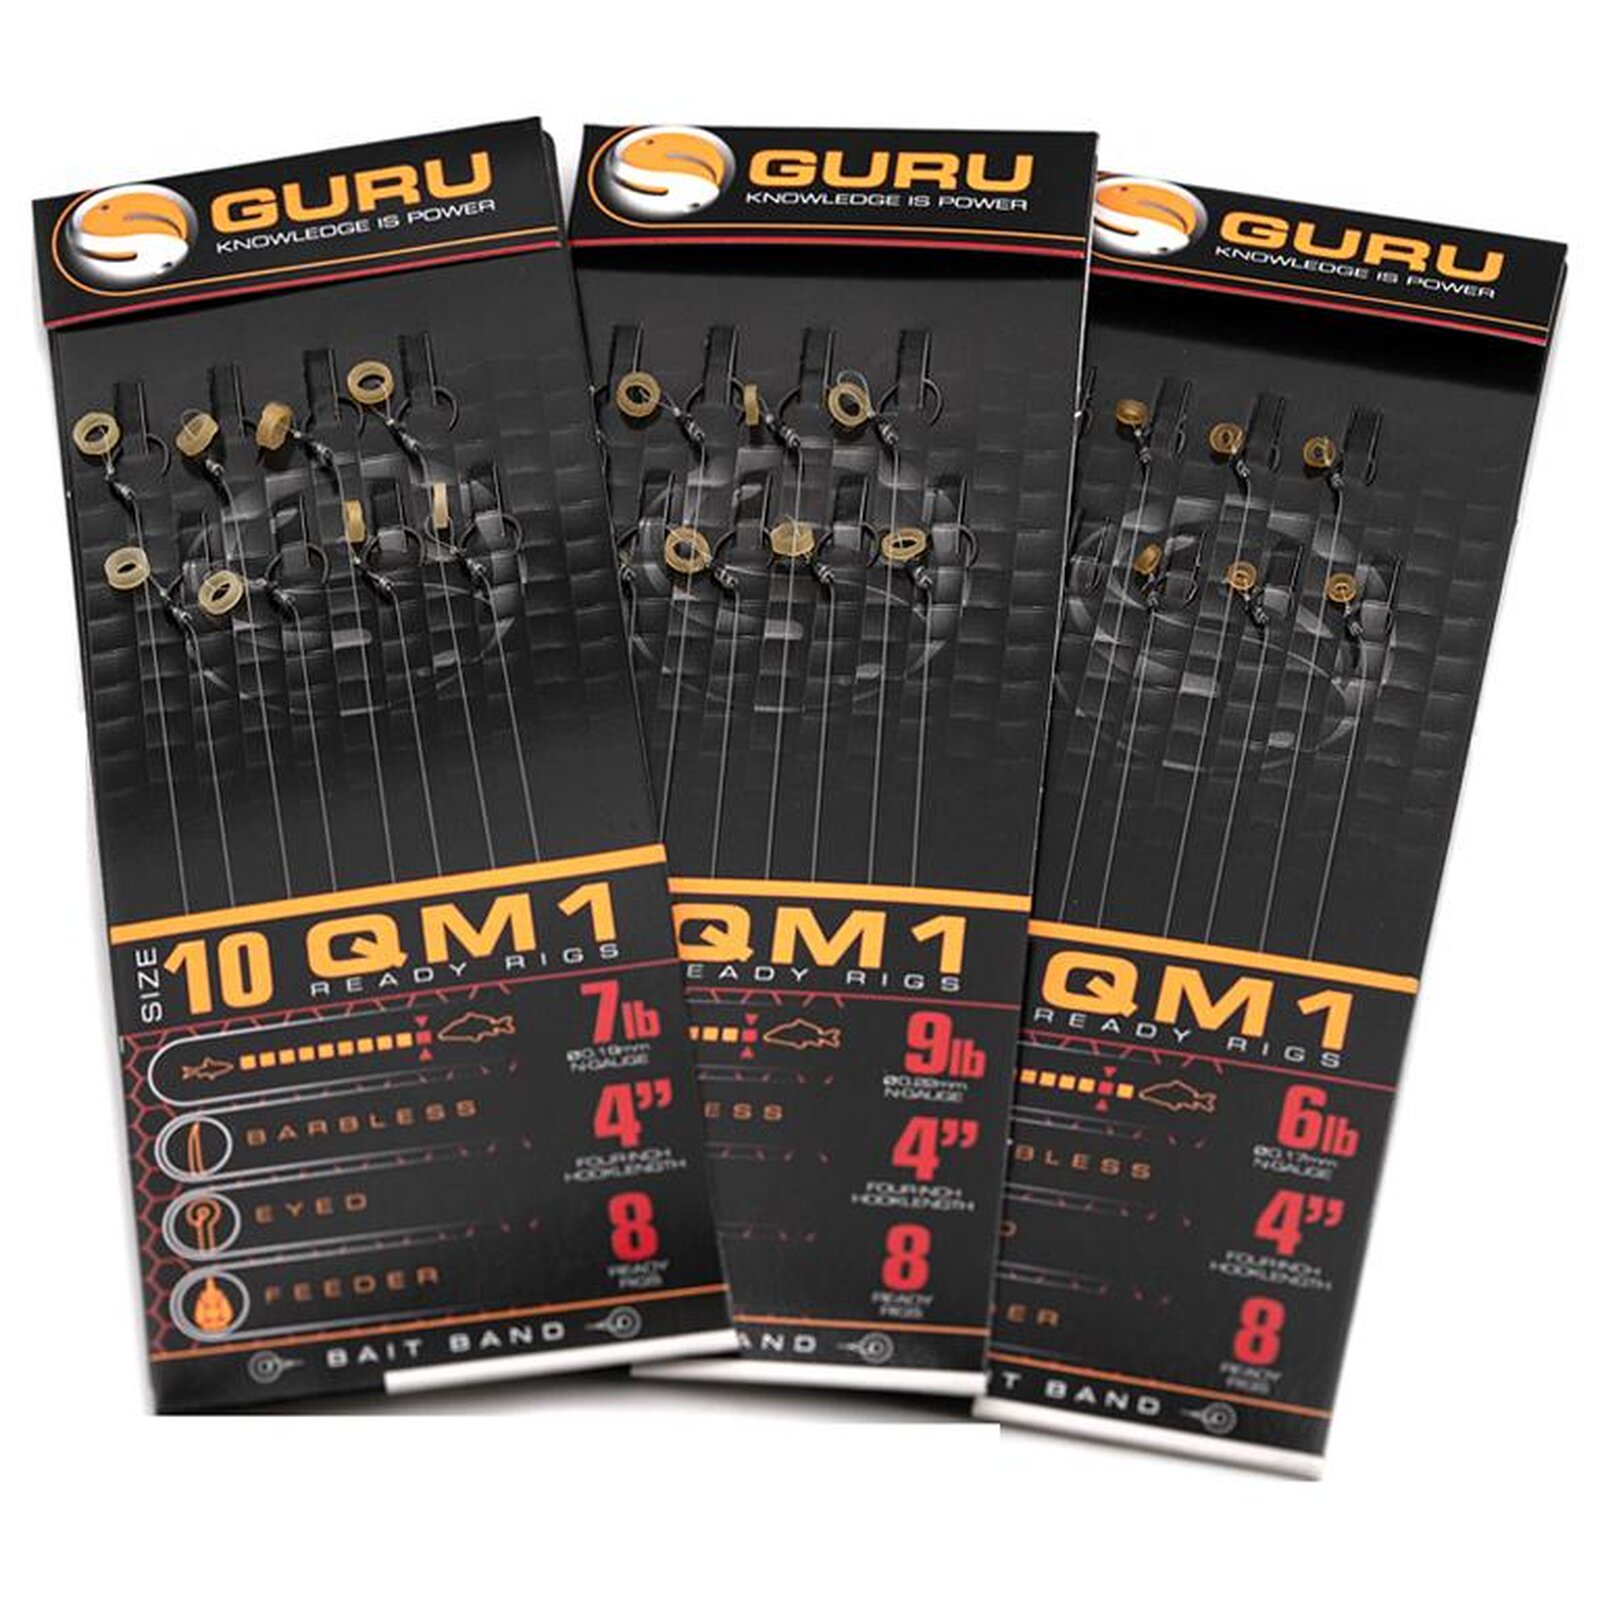 GURU QM1 Ready Rig Bait Bands 4 #16 | 0.17mm 8 Stk.